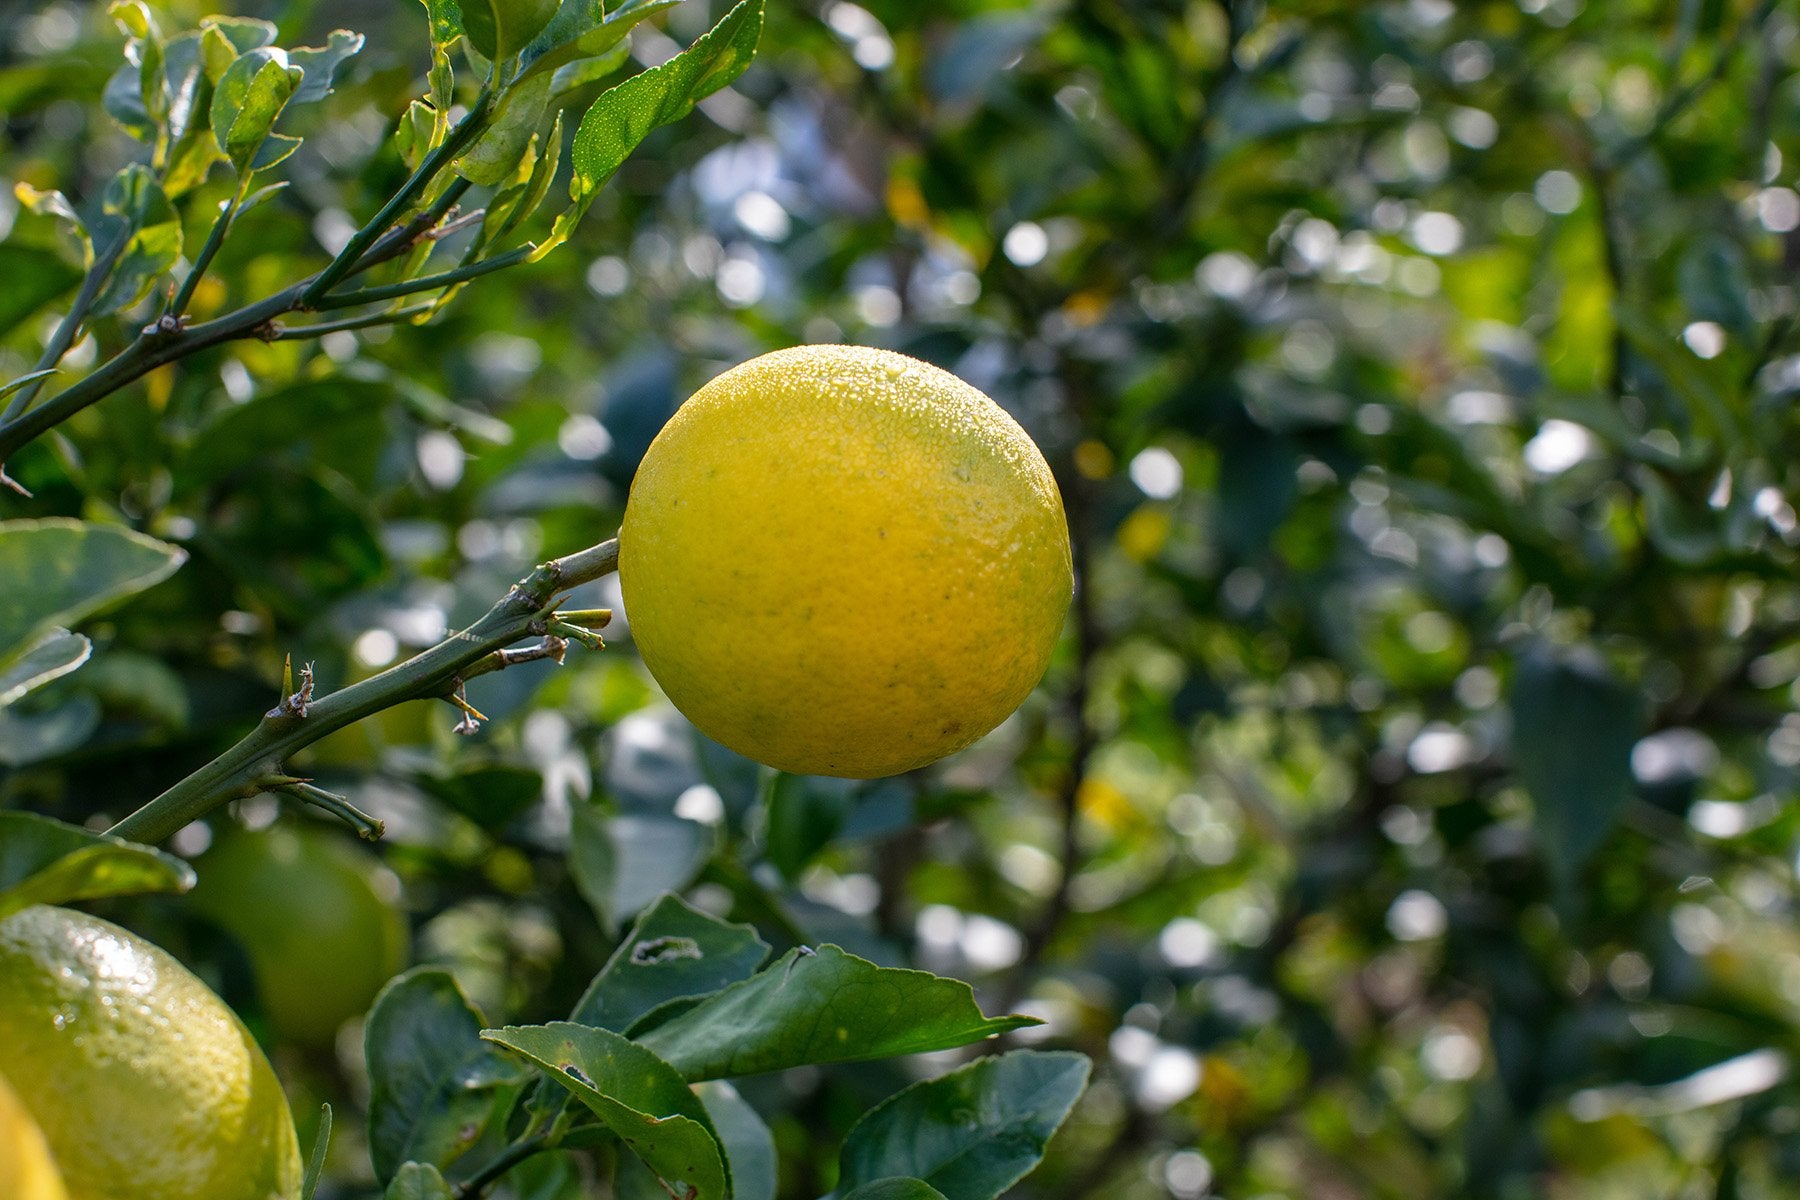 レモンとライムのそれぞれの良さが引き立つ ここにしかない湘南プライムレモンライム 自然園いしわた農場